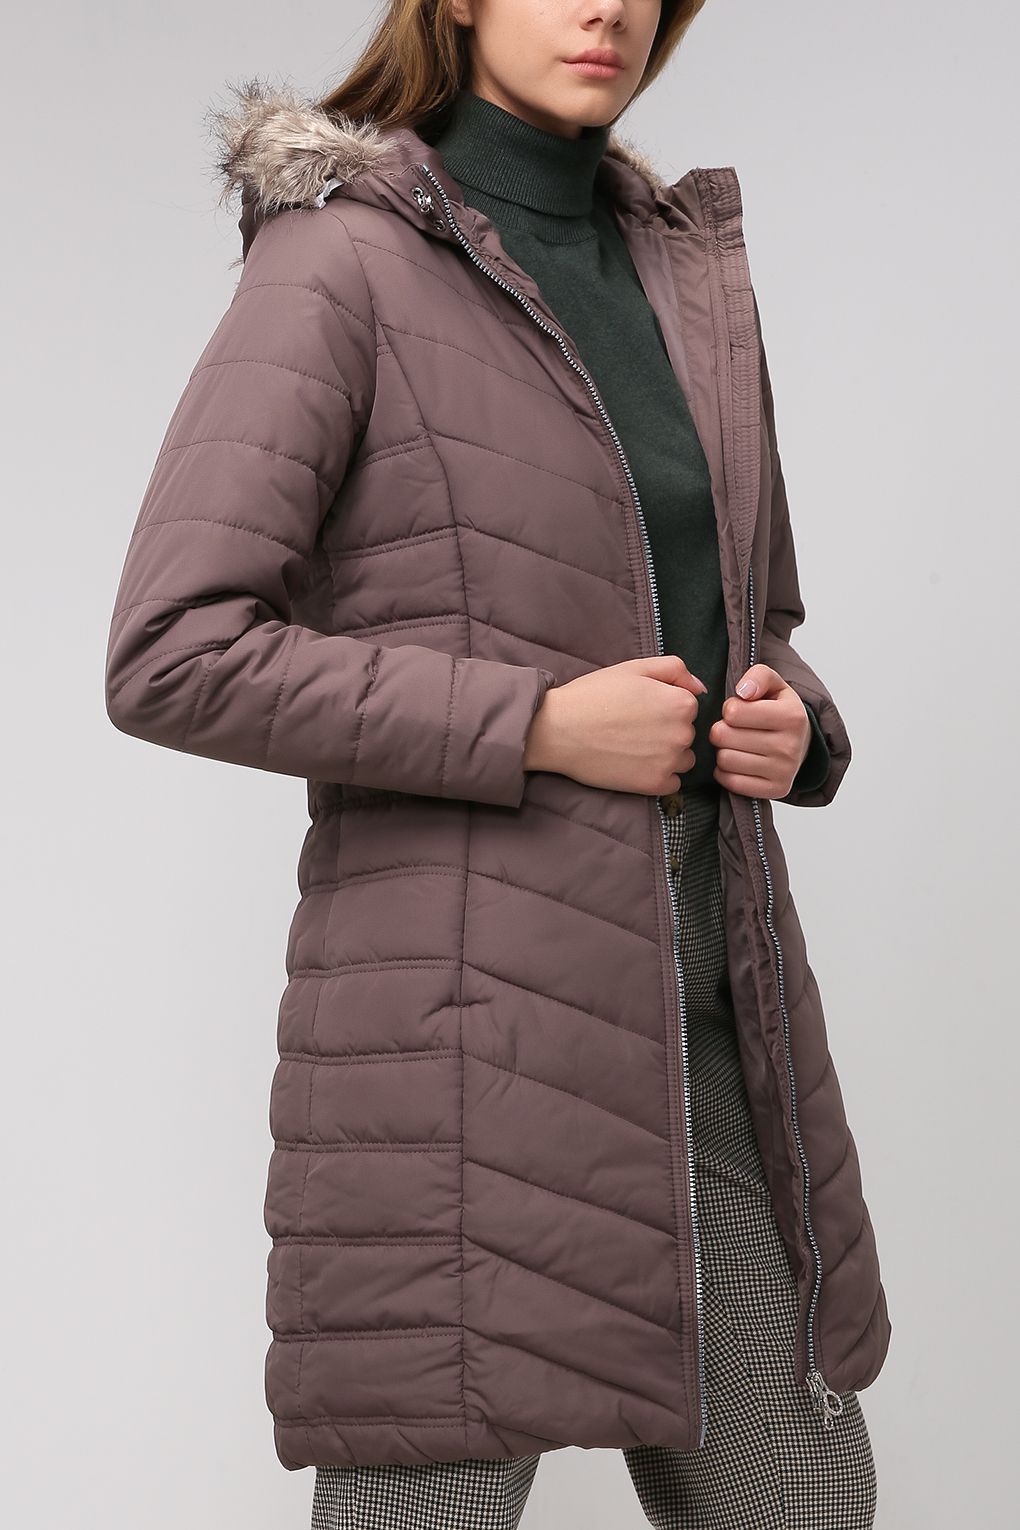 Куртка женская Regatta RWN159 коричневая 10